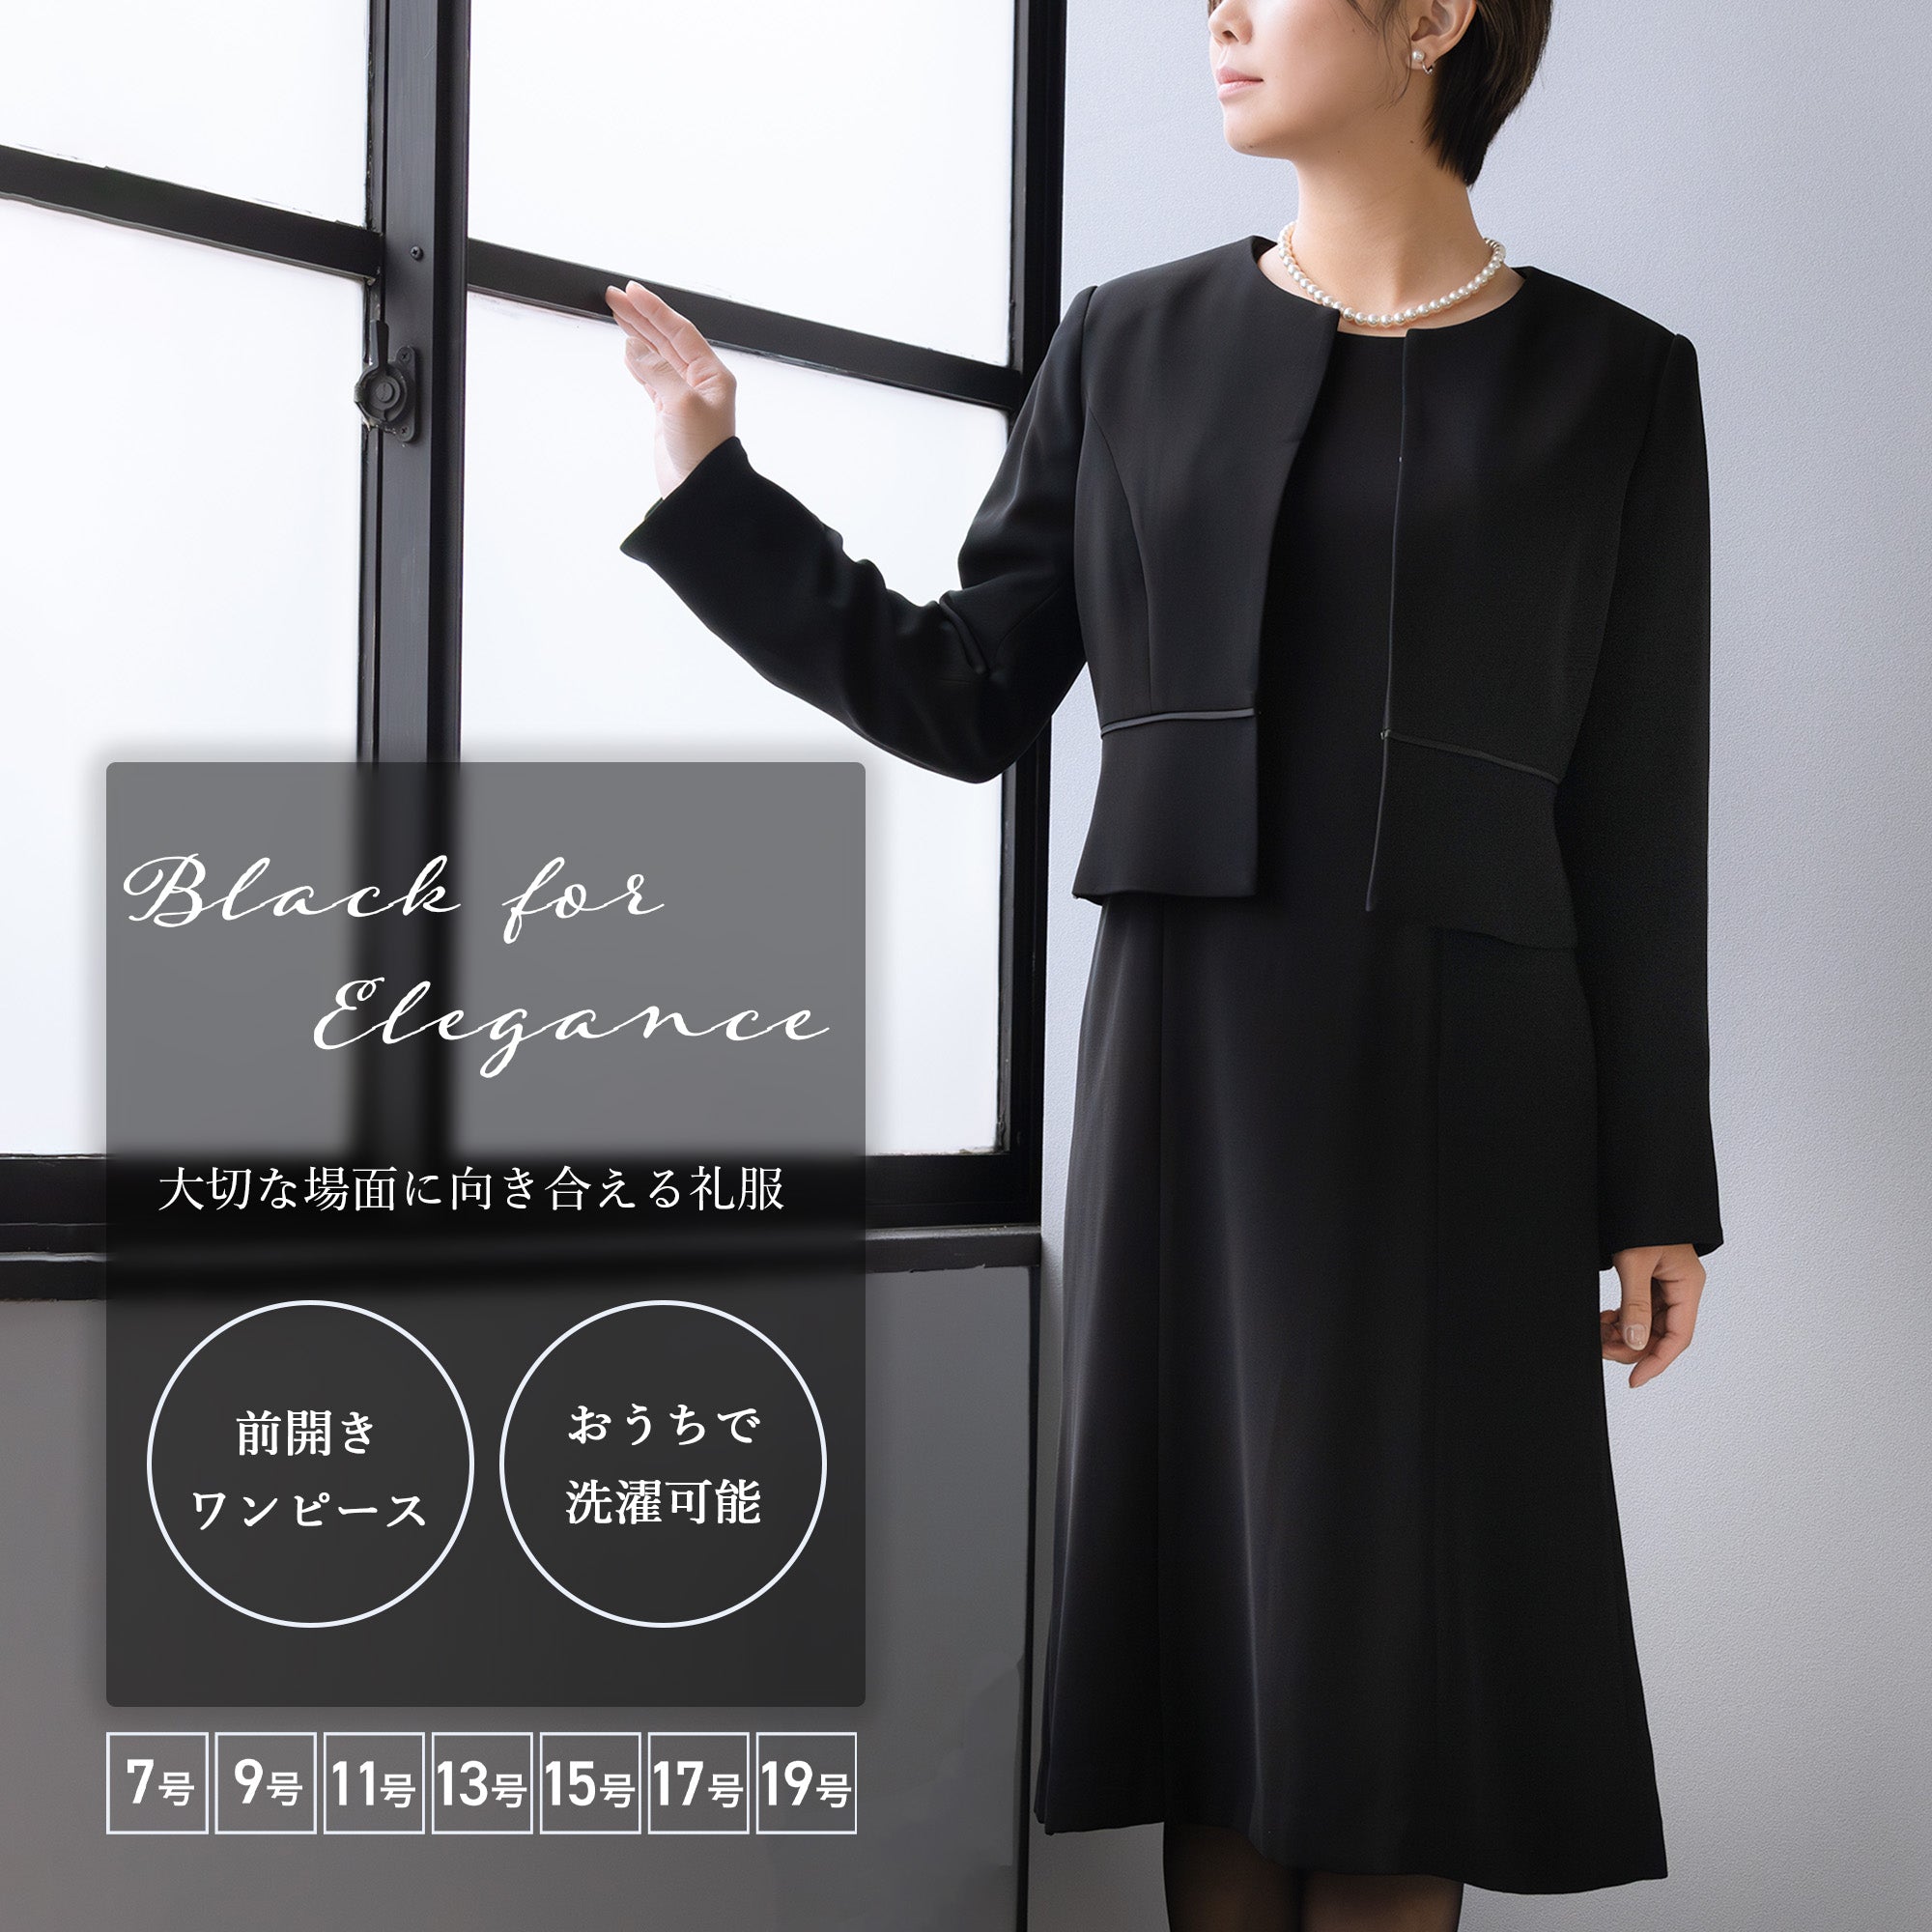 洗えるブラックフォーマル11号ワンピース - スーツ・フォーマル・ドレス